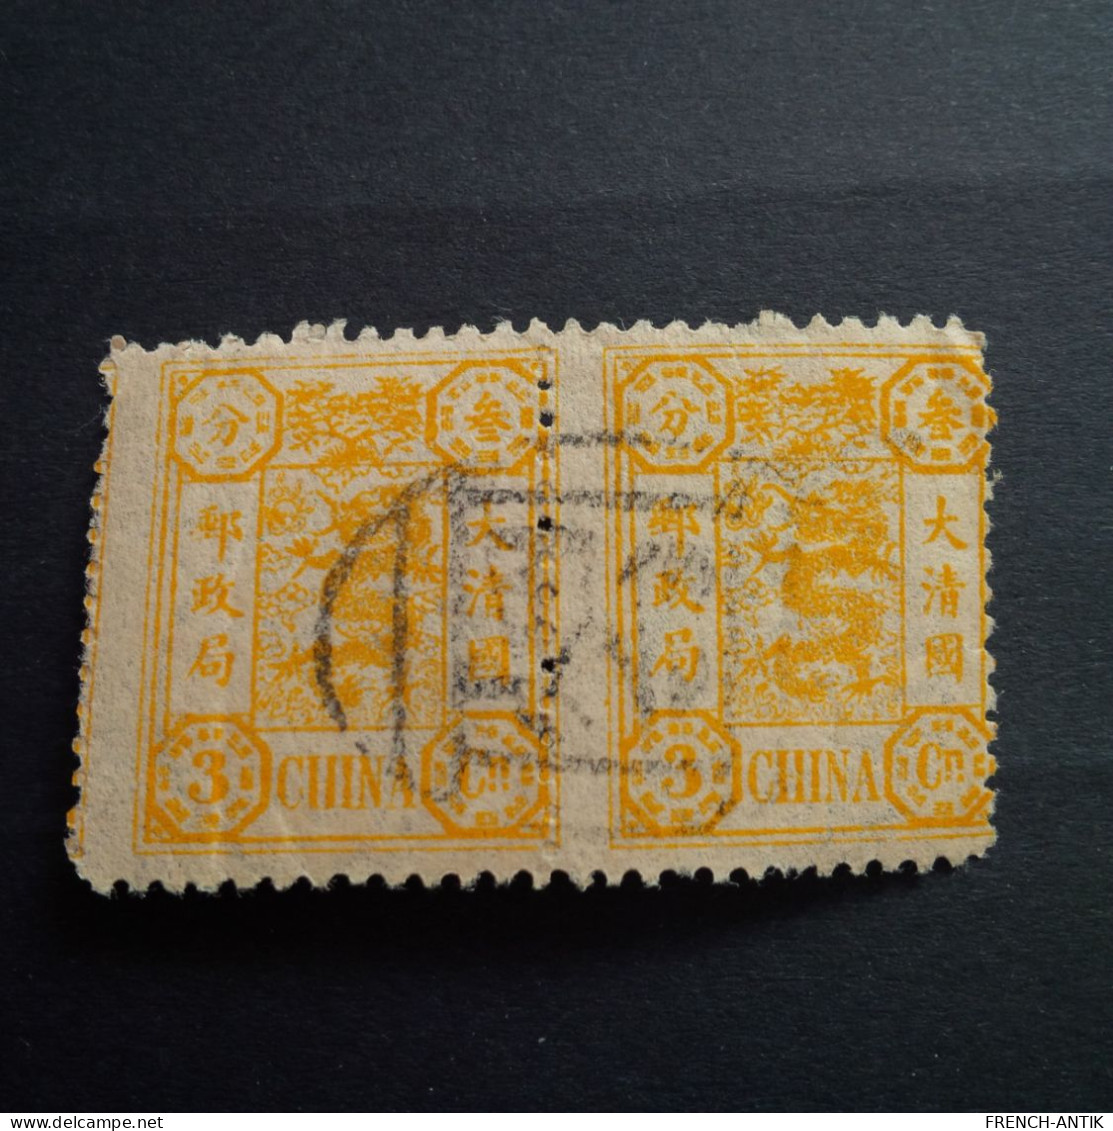 TIMBRE PAIRE CANDARIN 3C DONT UN MAL CENTRE AVEC CACHET NOIR - Used Stamps